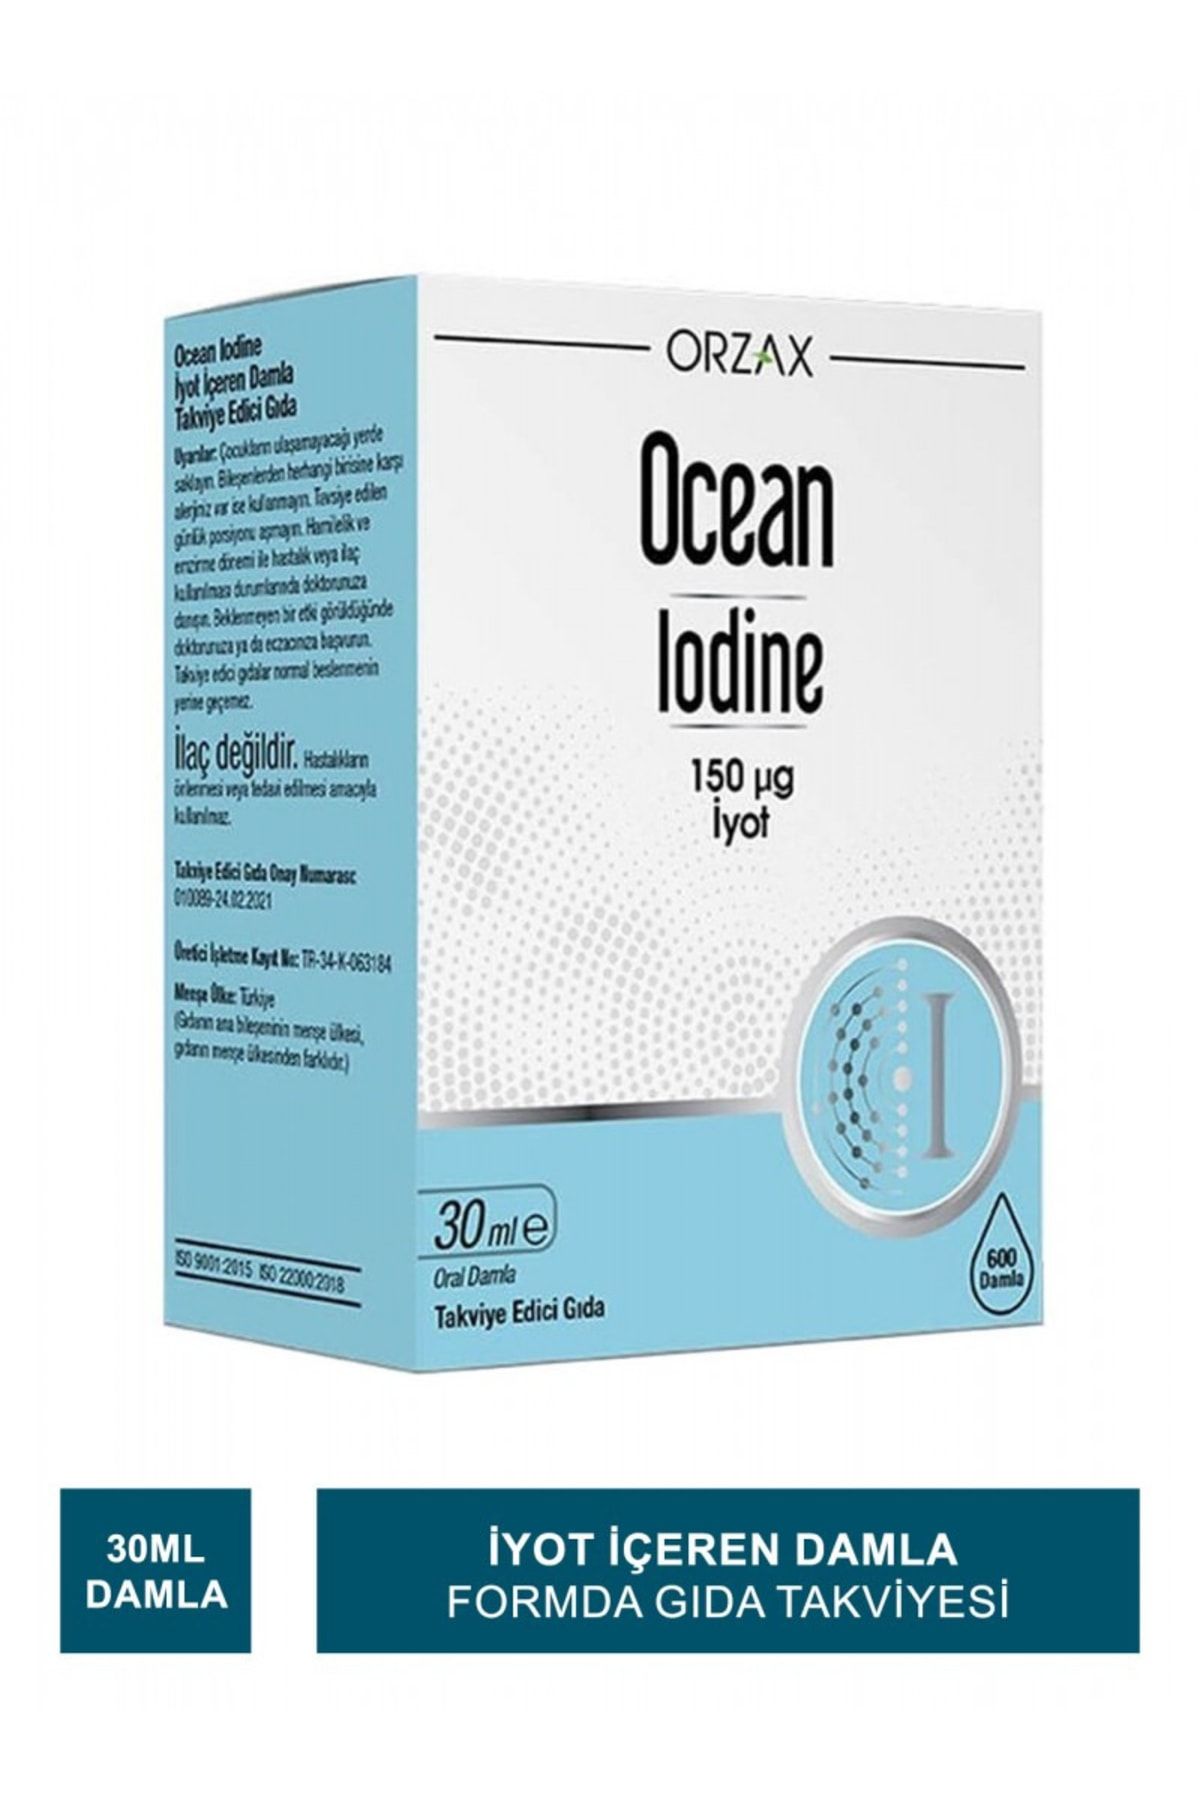 Ocean Iodine 150 ?g Iyot Takviye Edici Gıda 30 ml